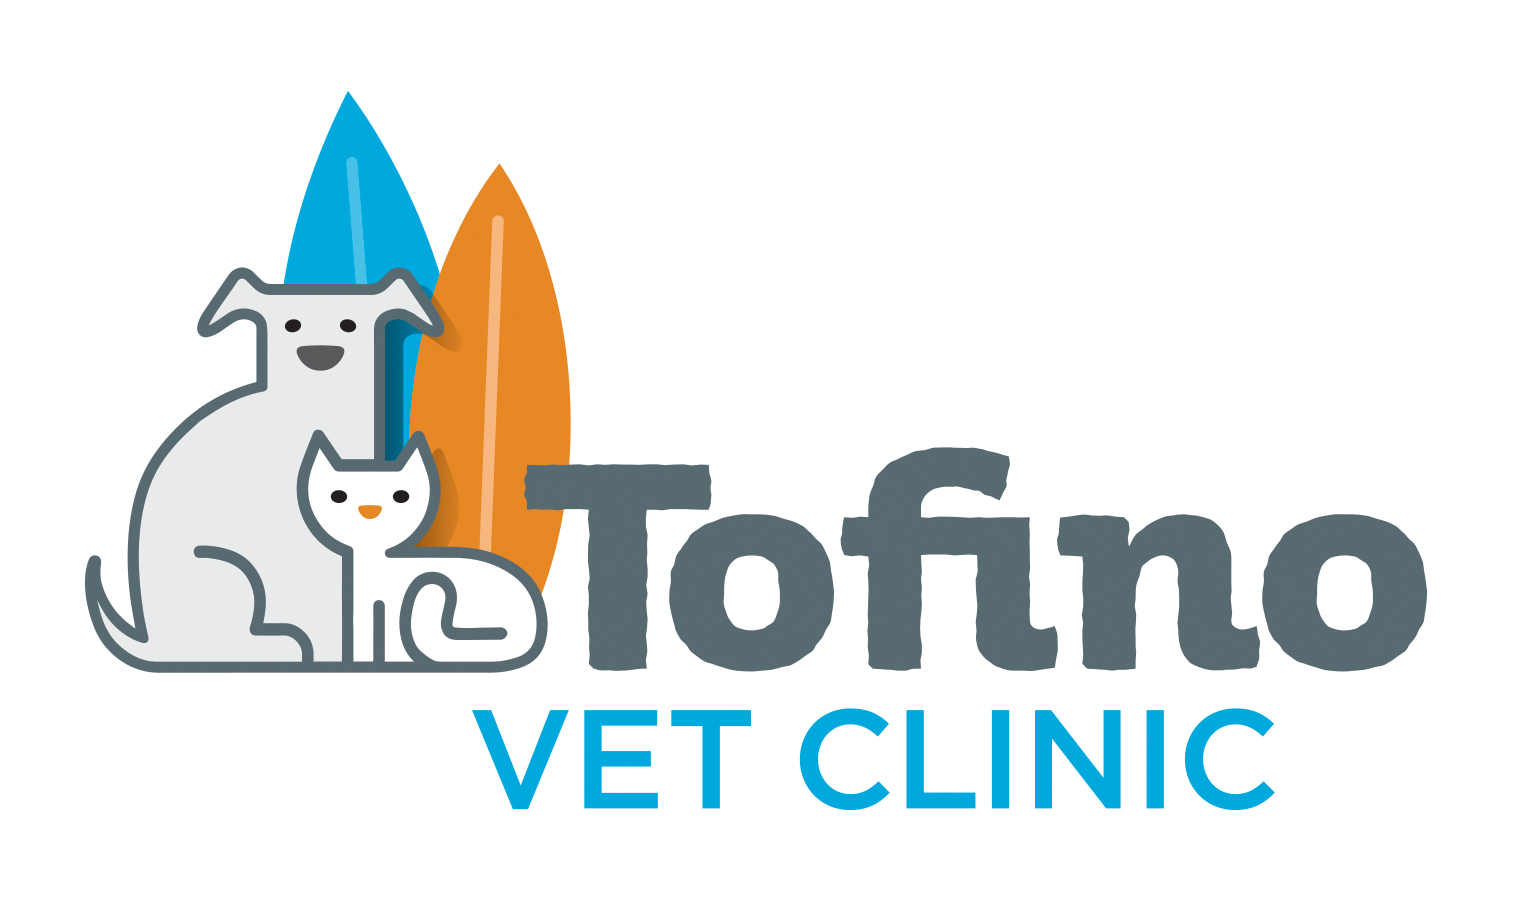 Tofino Veterinary Clinic